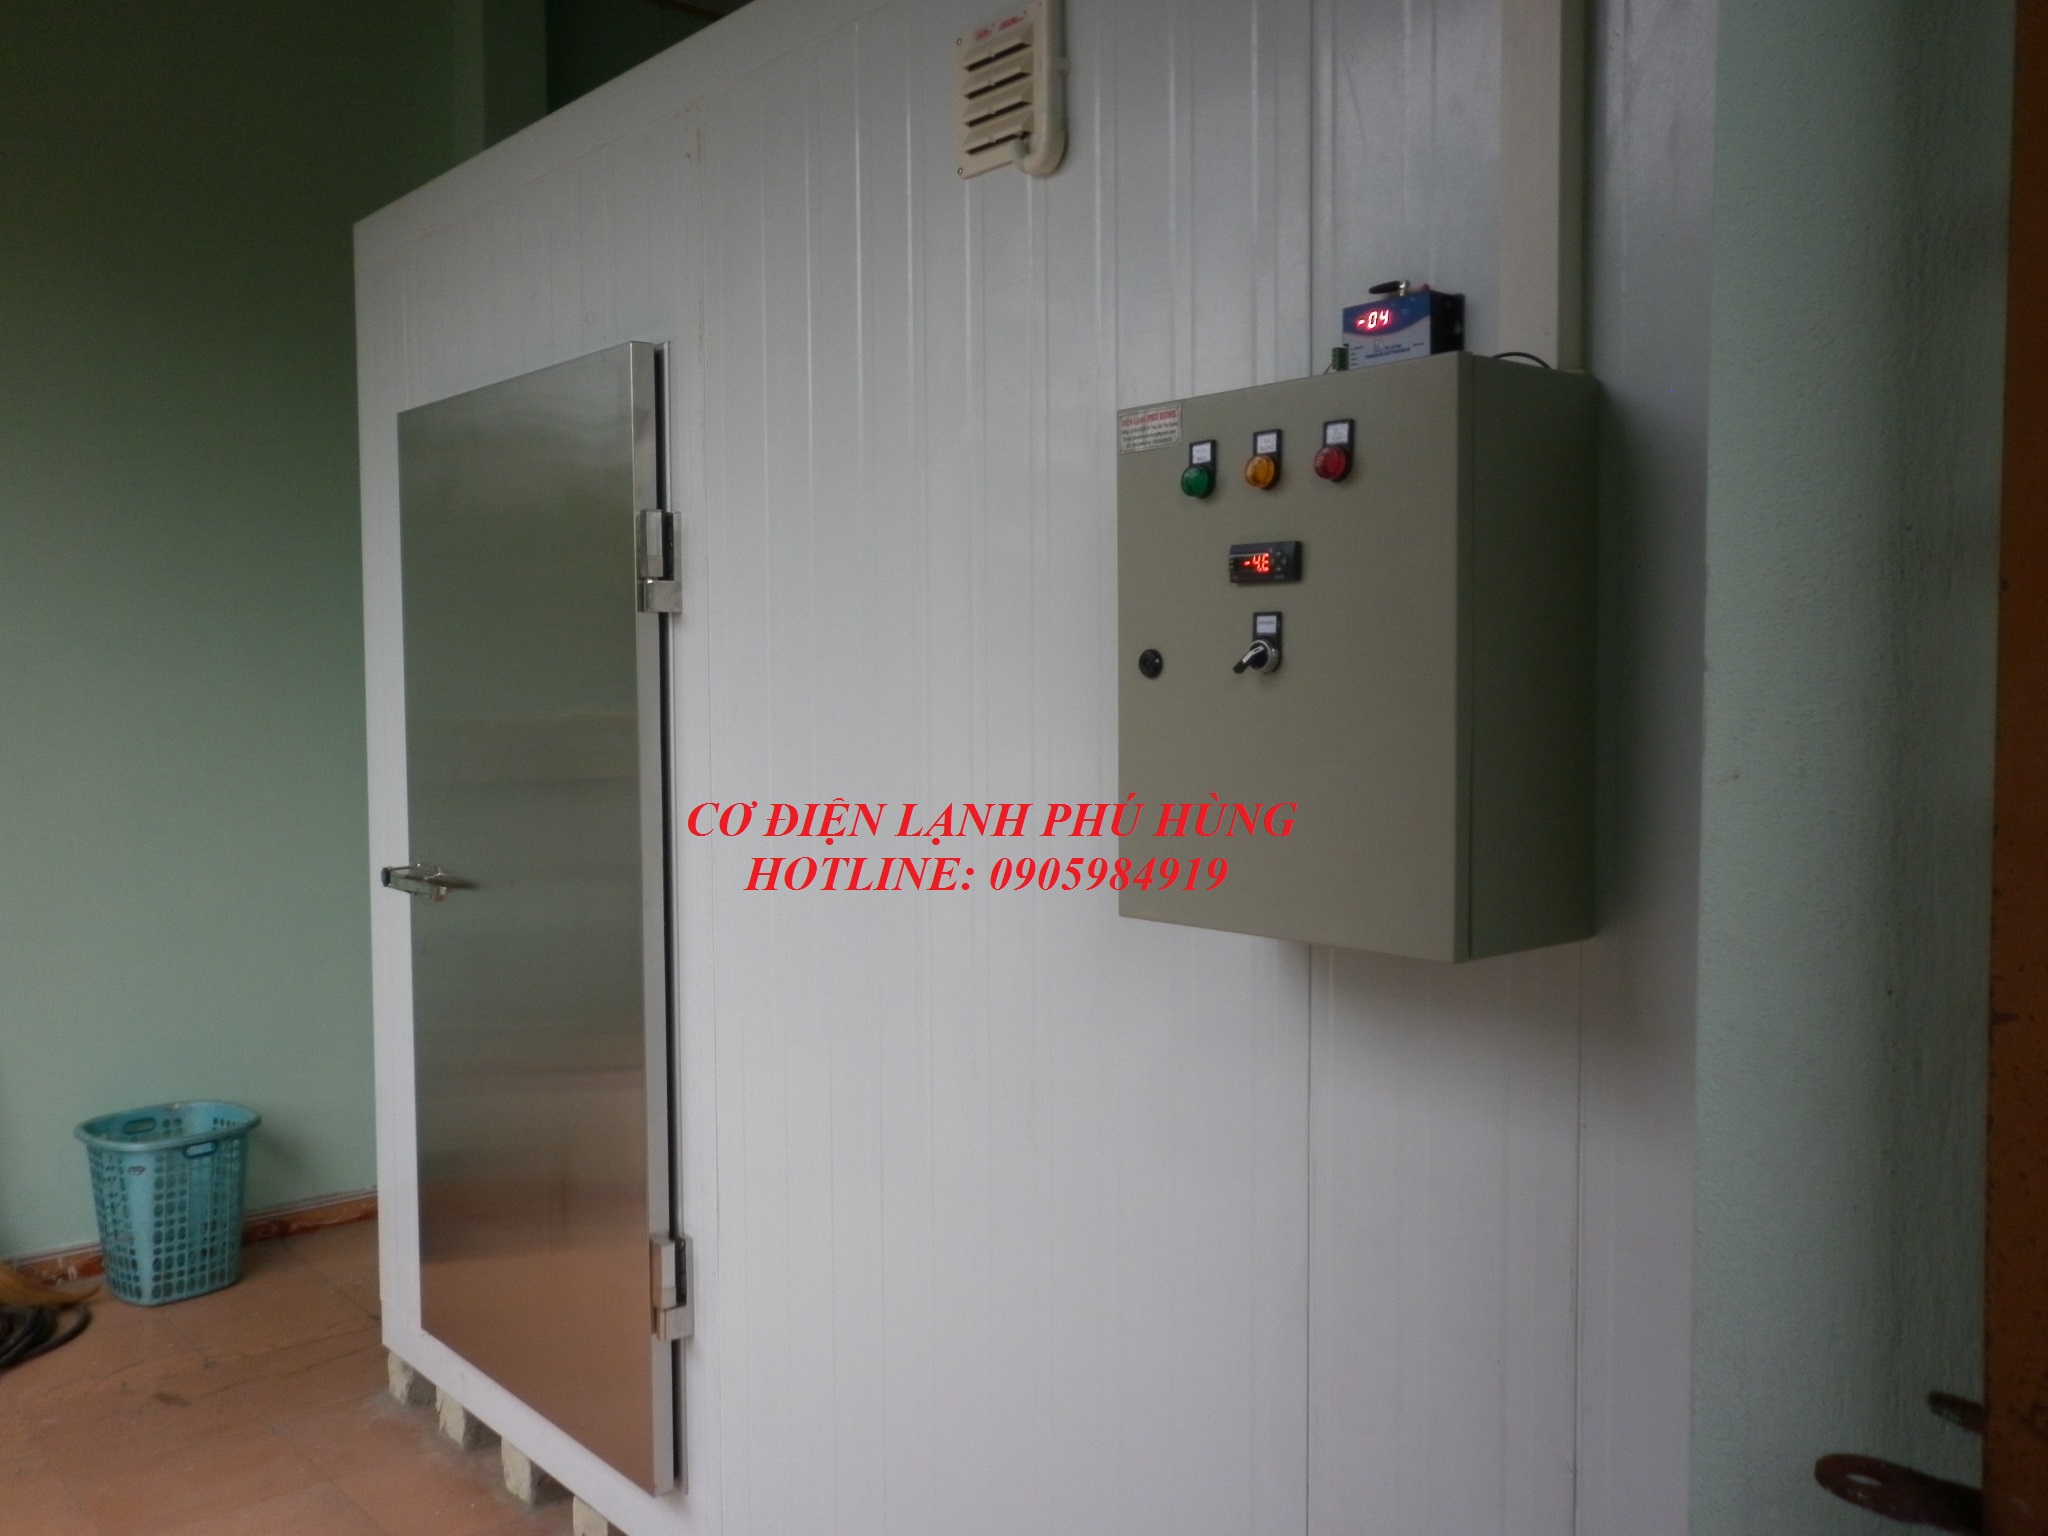 Tủ Tủ điện điều khiển kho lạnh Đà Nẵngo lạnh